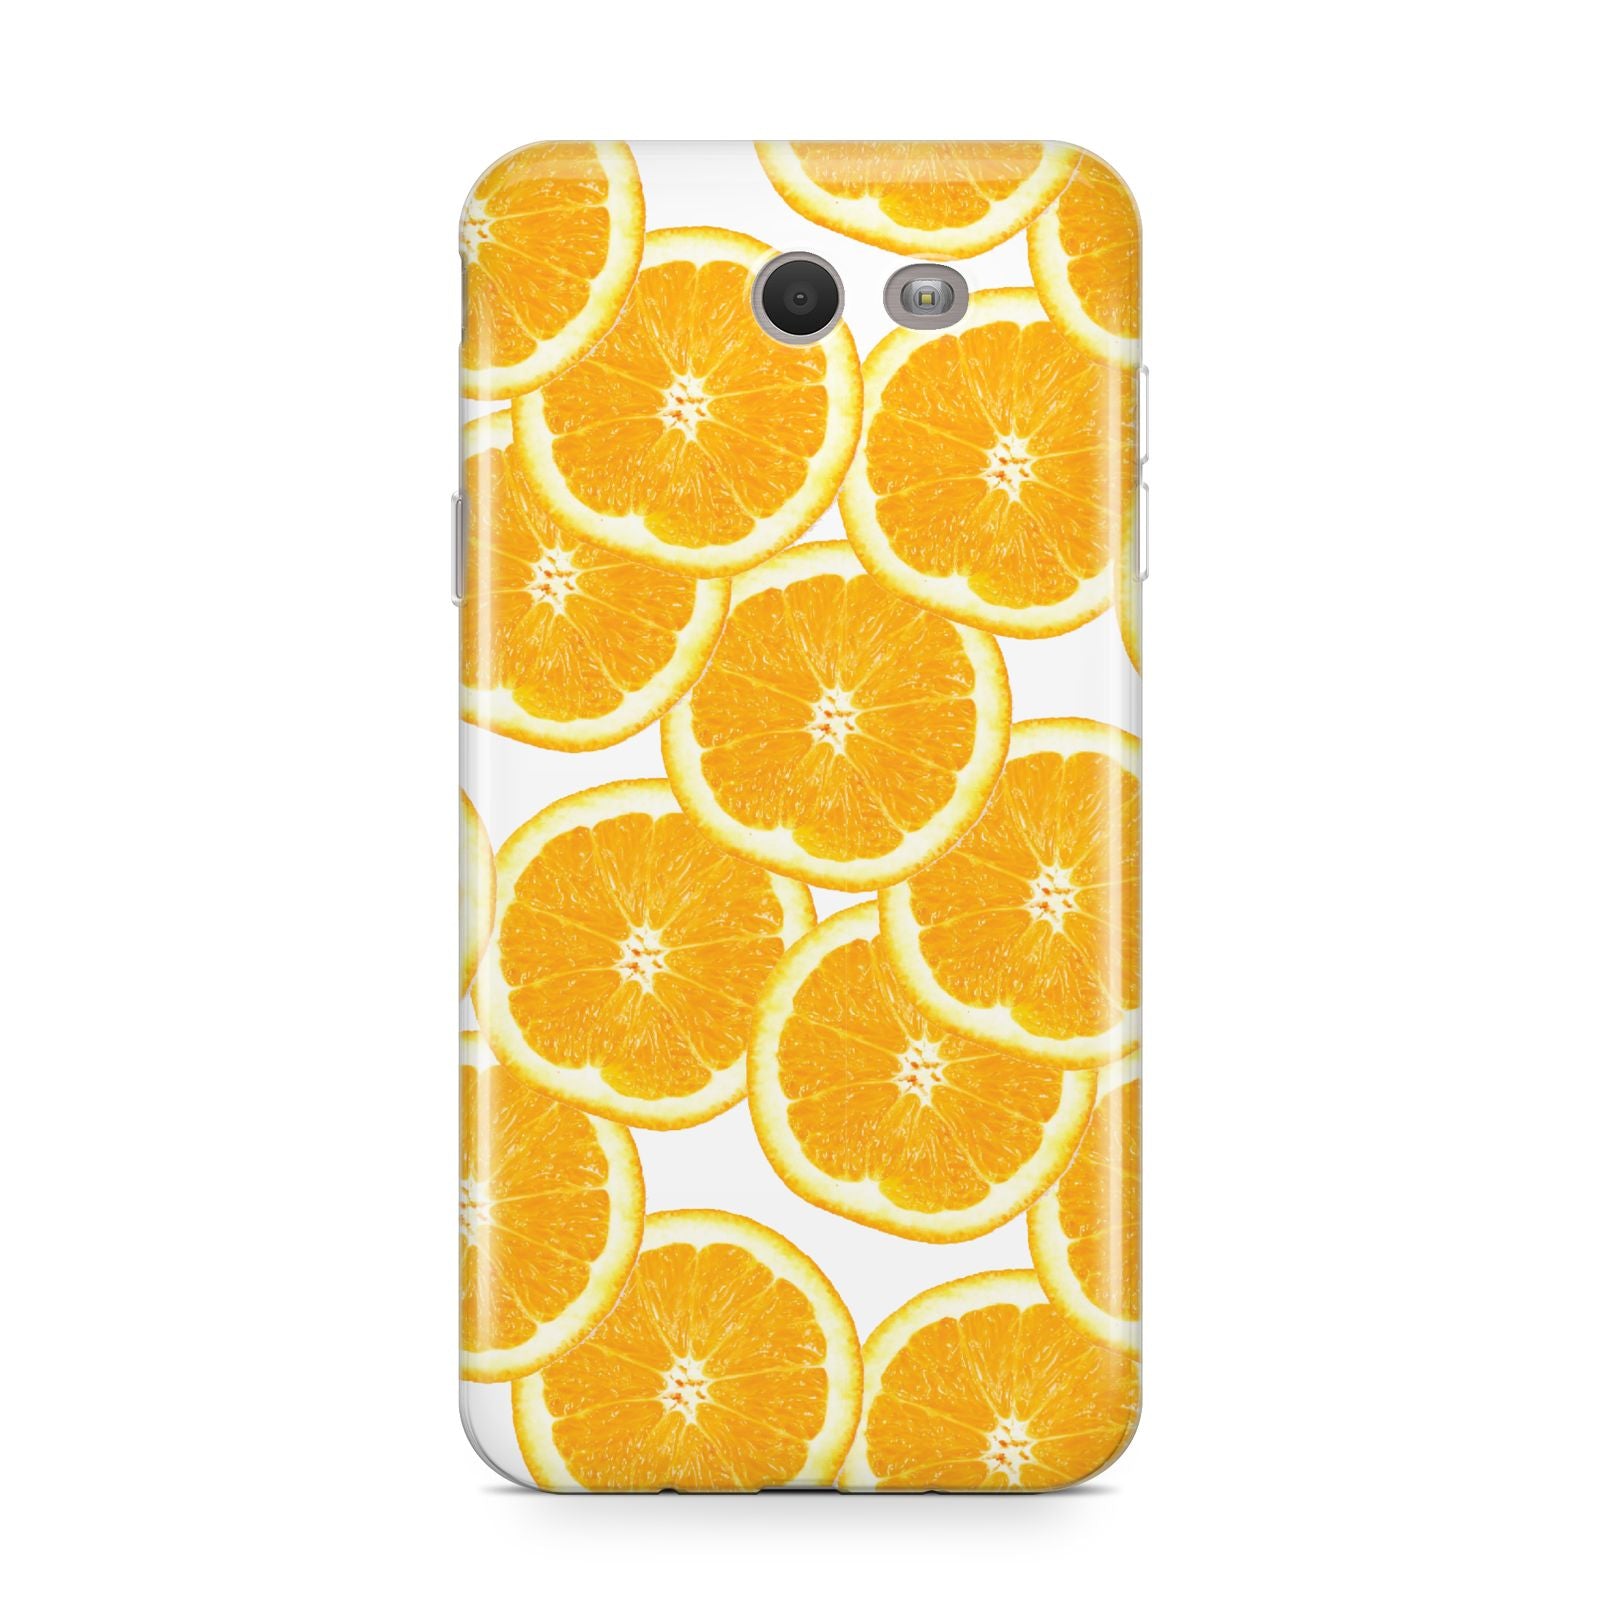 Orange Fruit Slices Samsung Galaxy J7 2017 Case